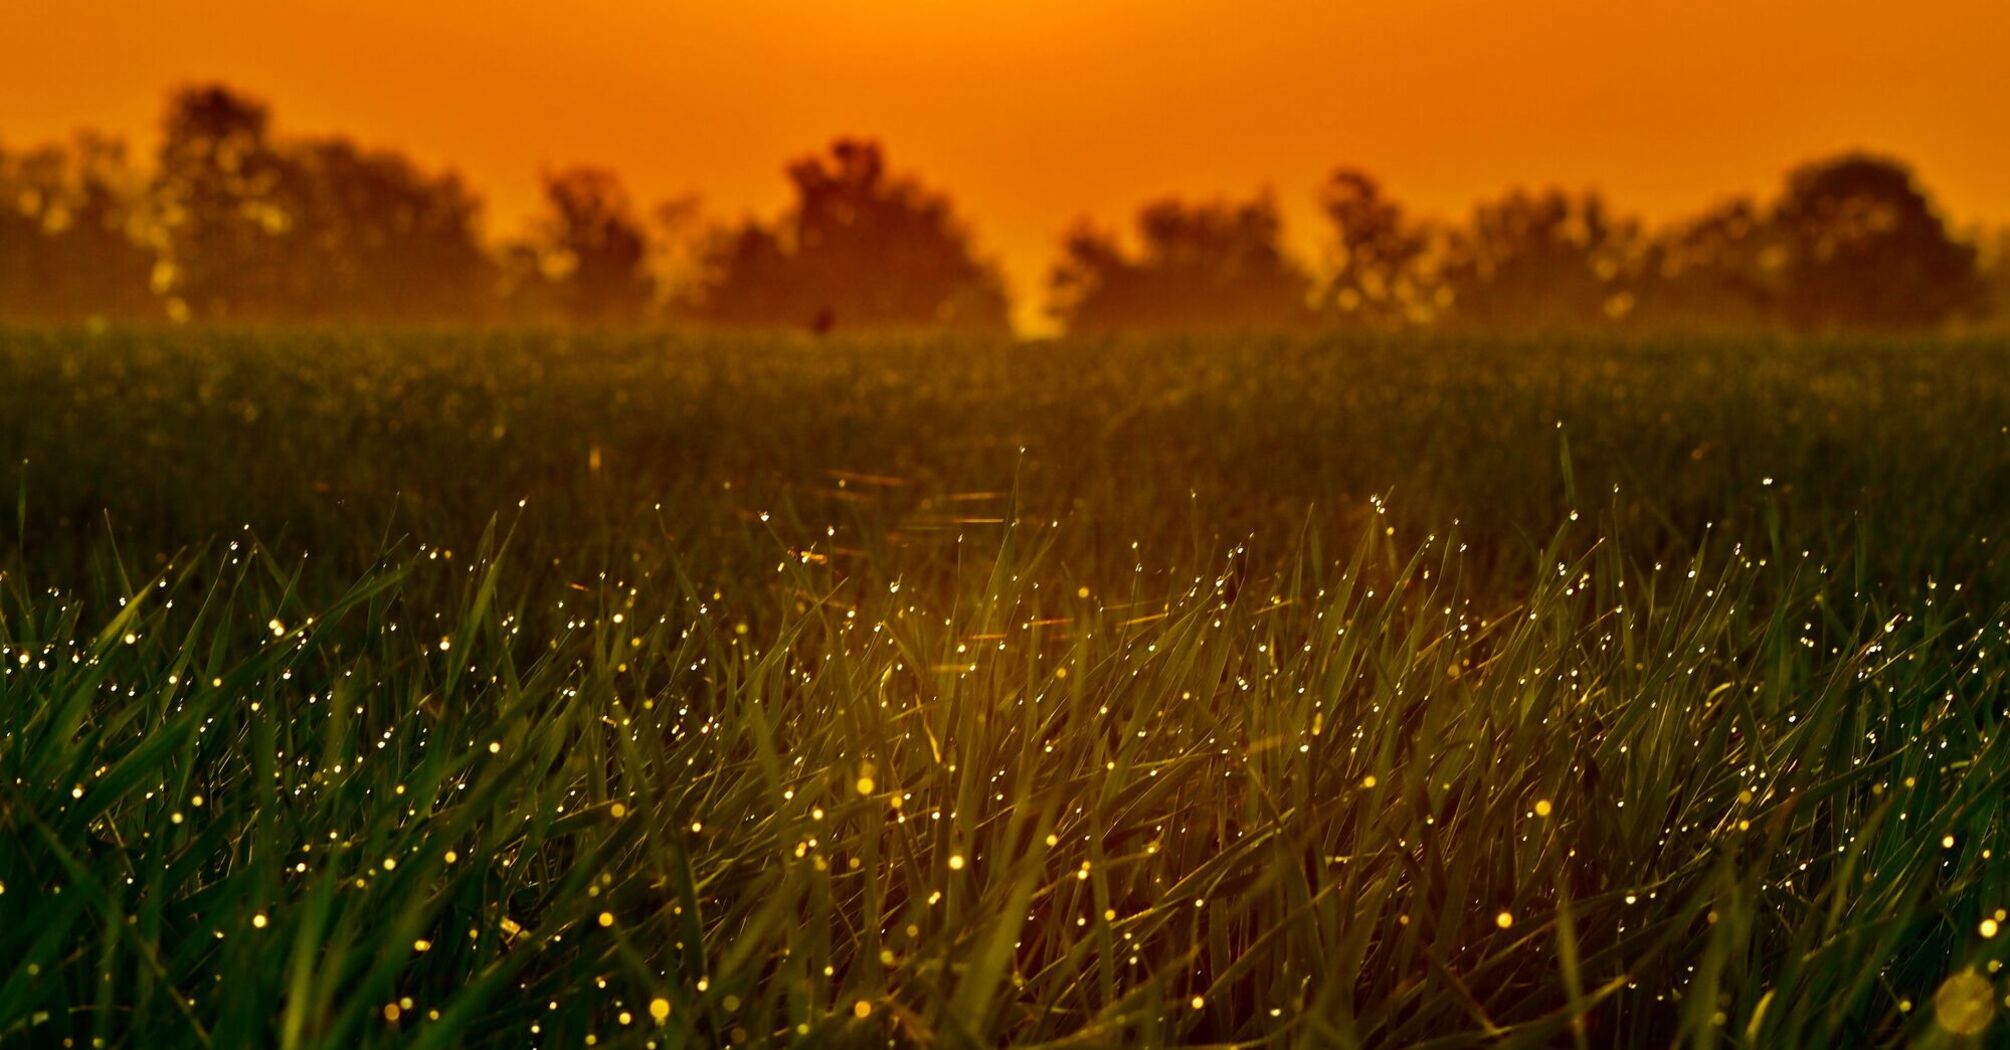 Green grass field full of fireflies during sunset